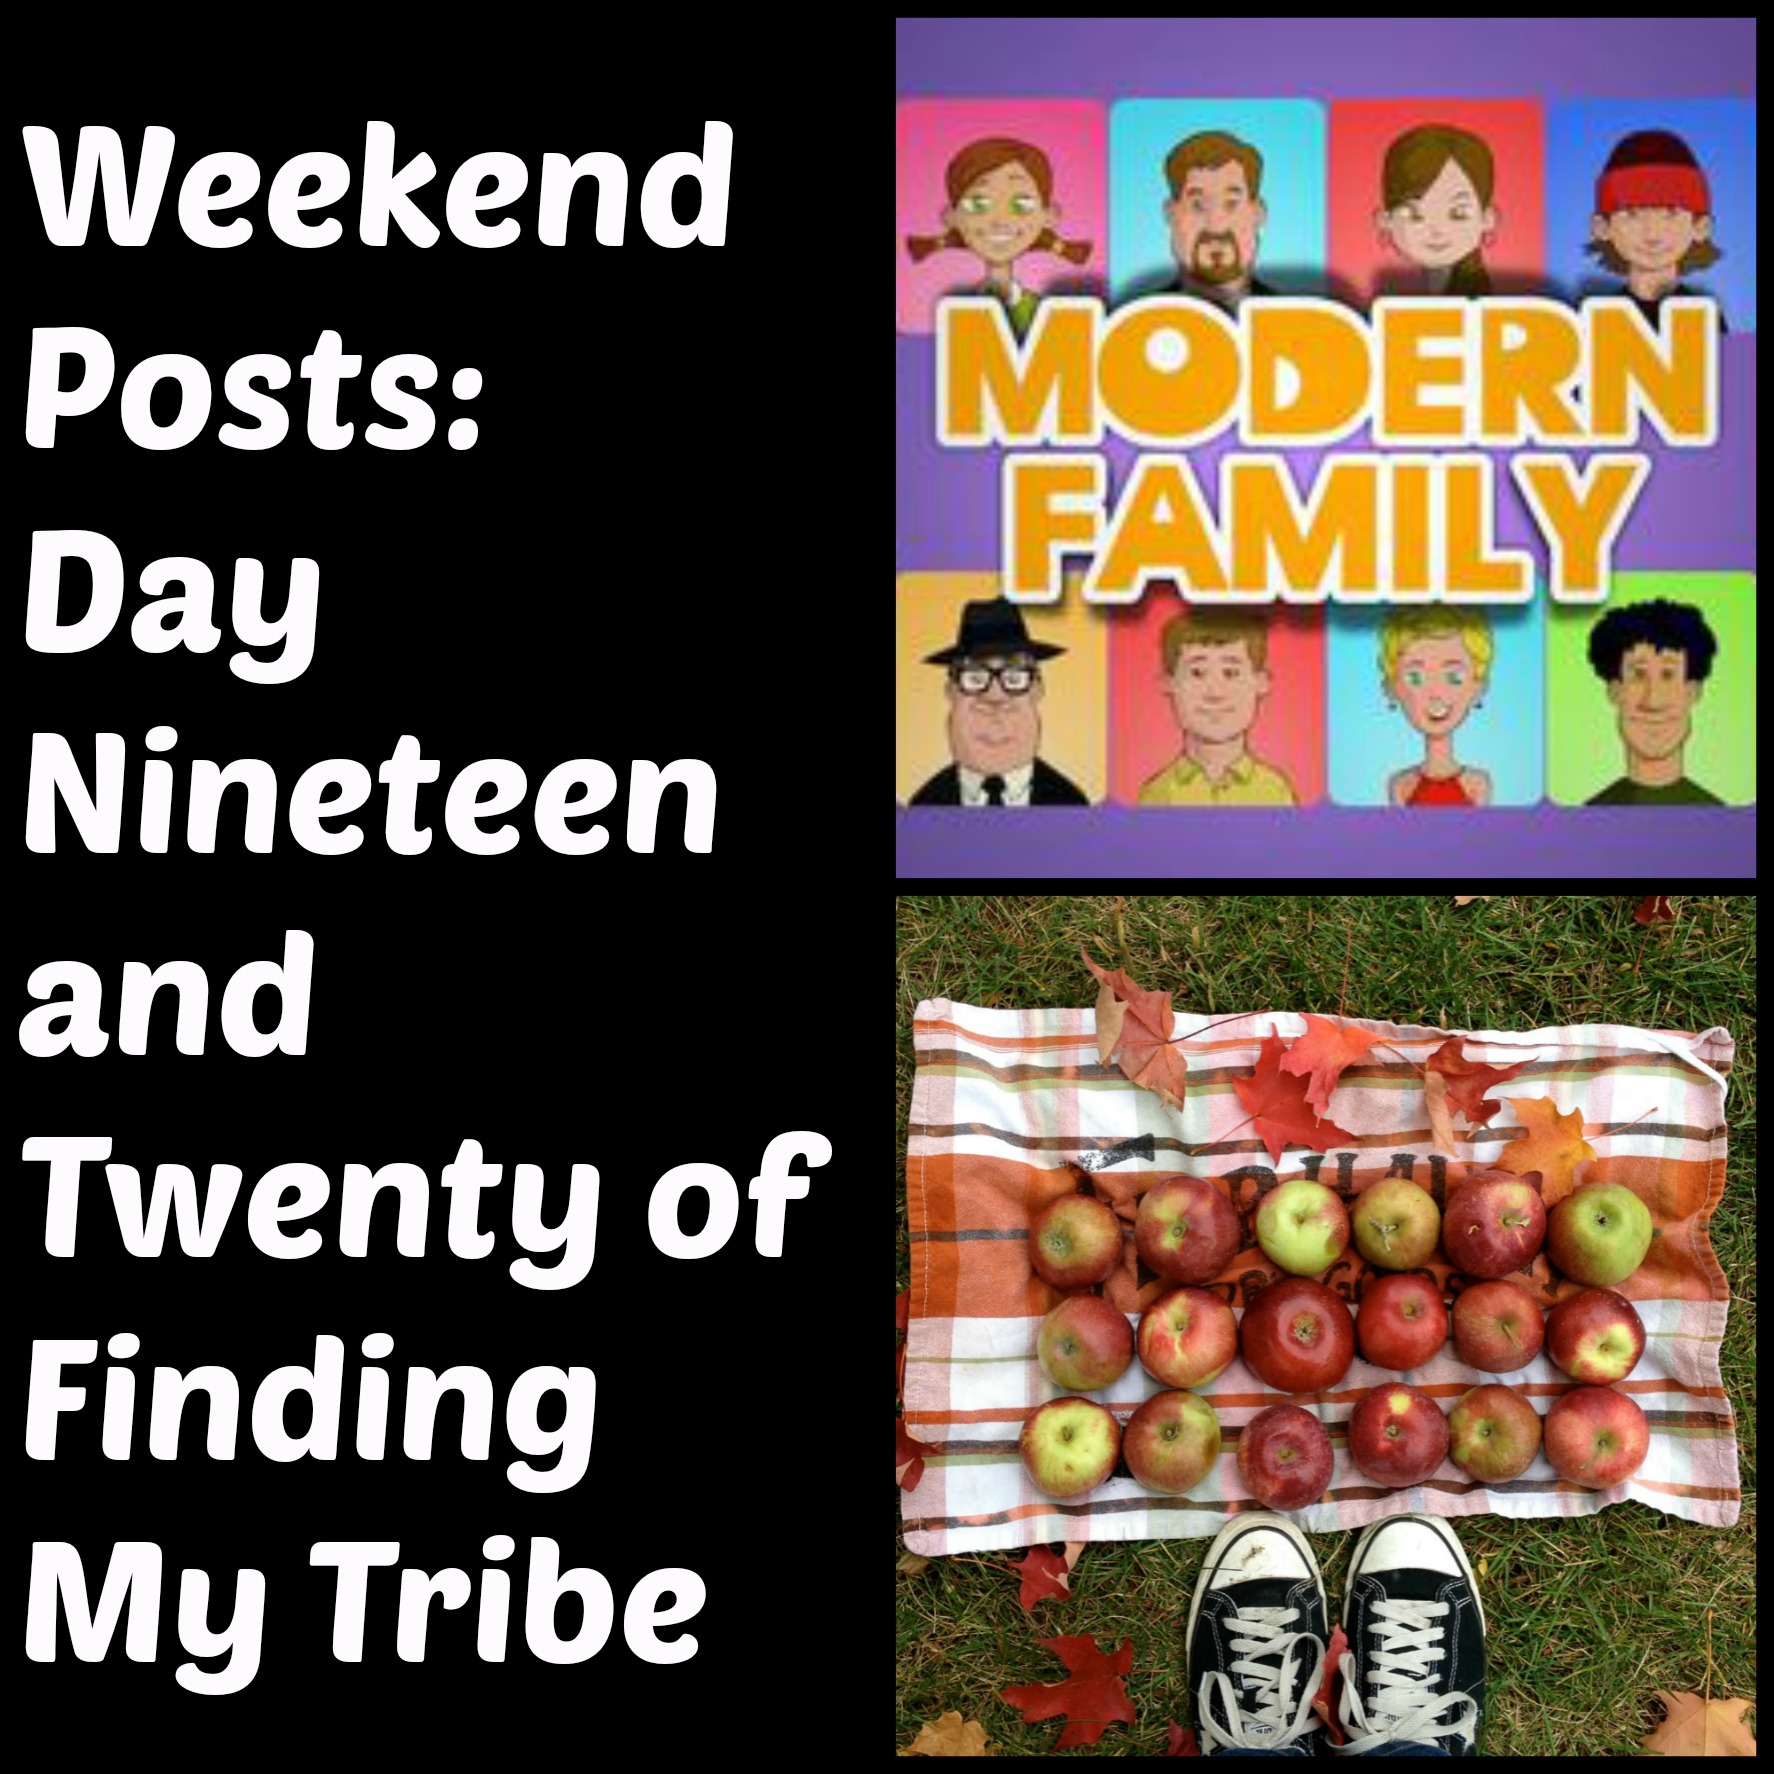 modernfamilyblog